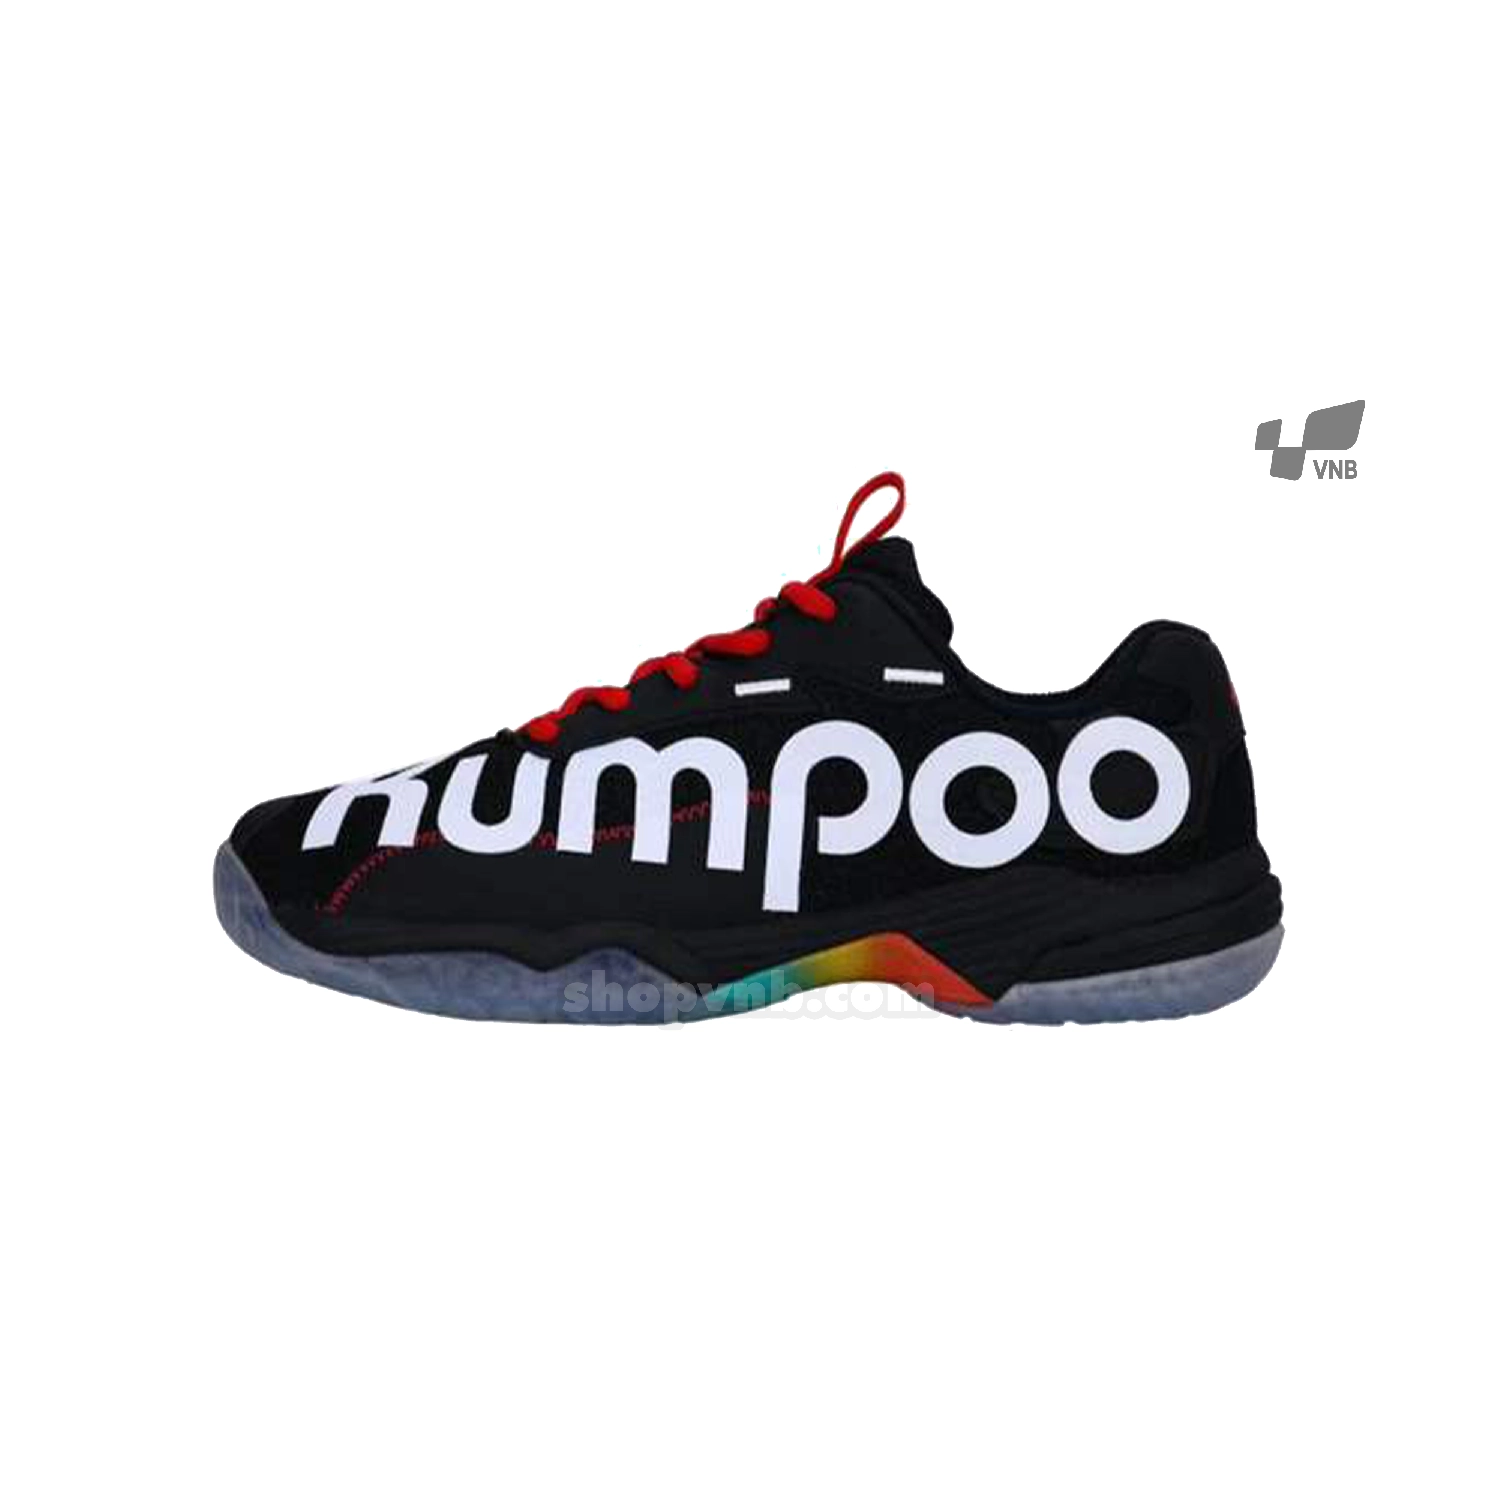 Giày cầu lông Kumpoo KHR - D72 đen 2020